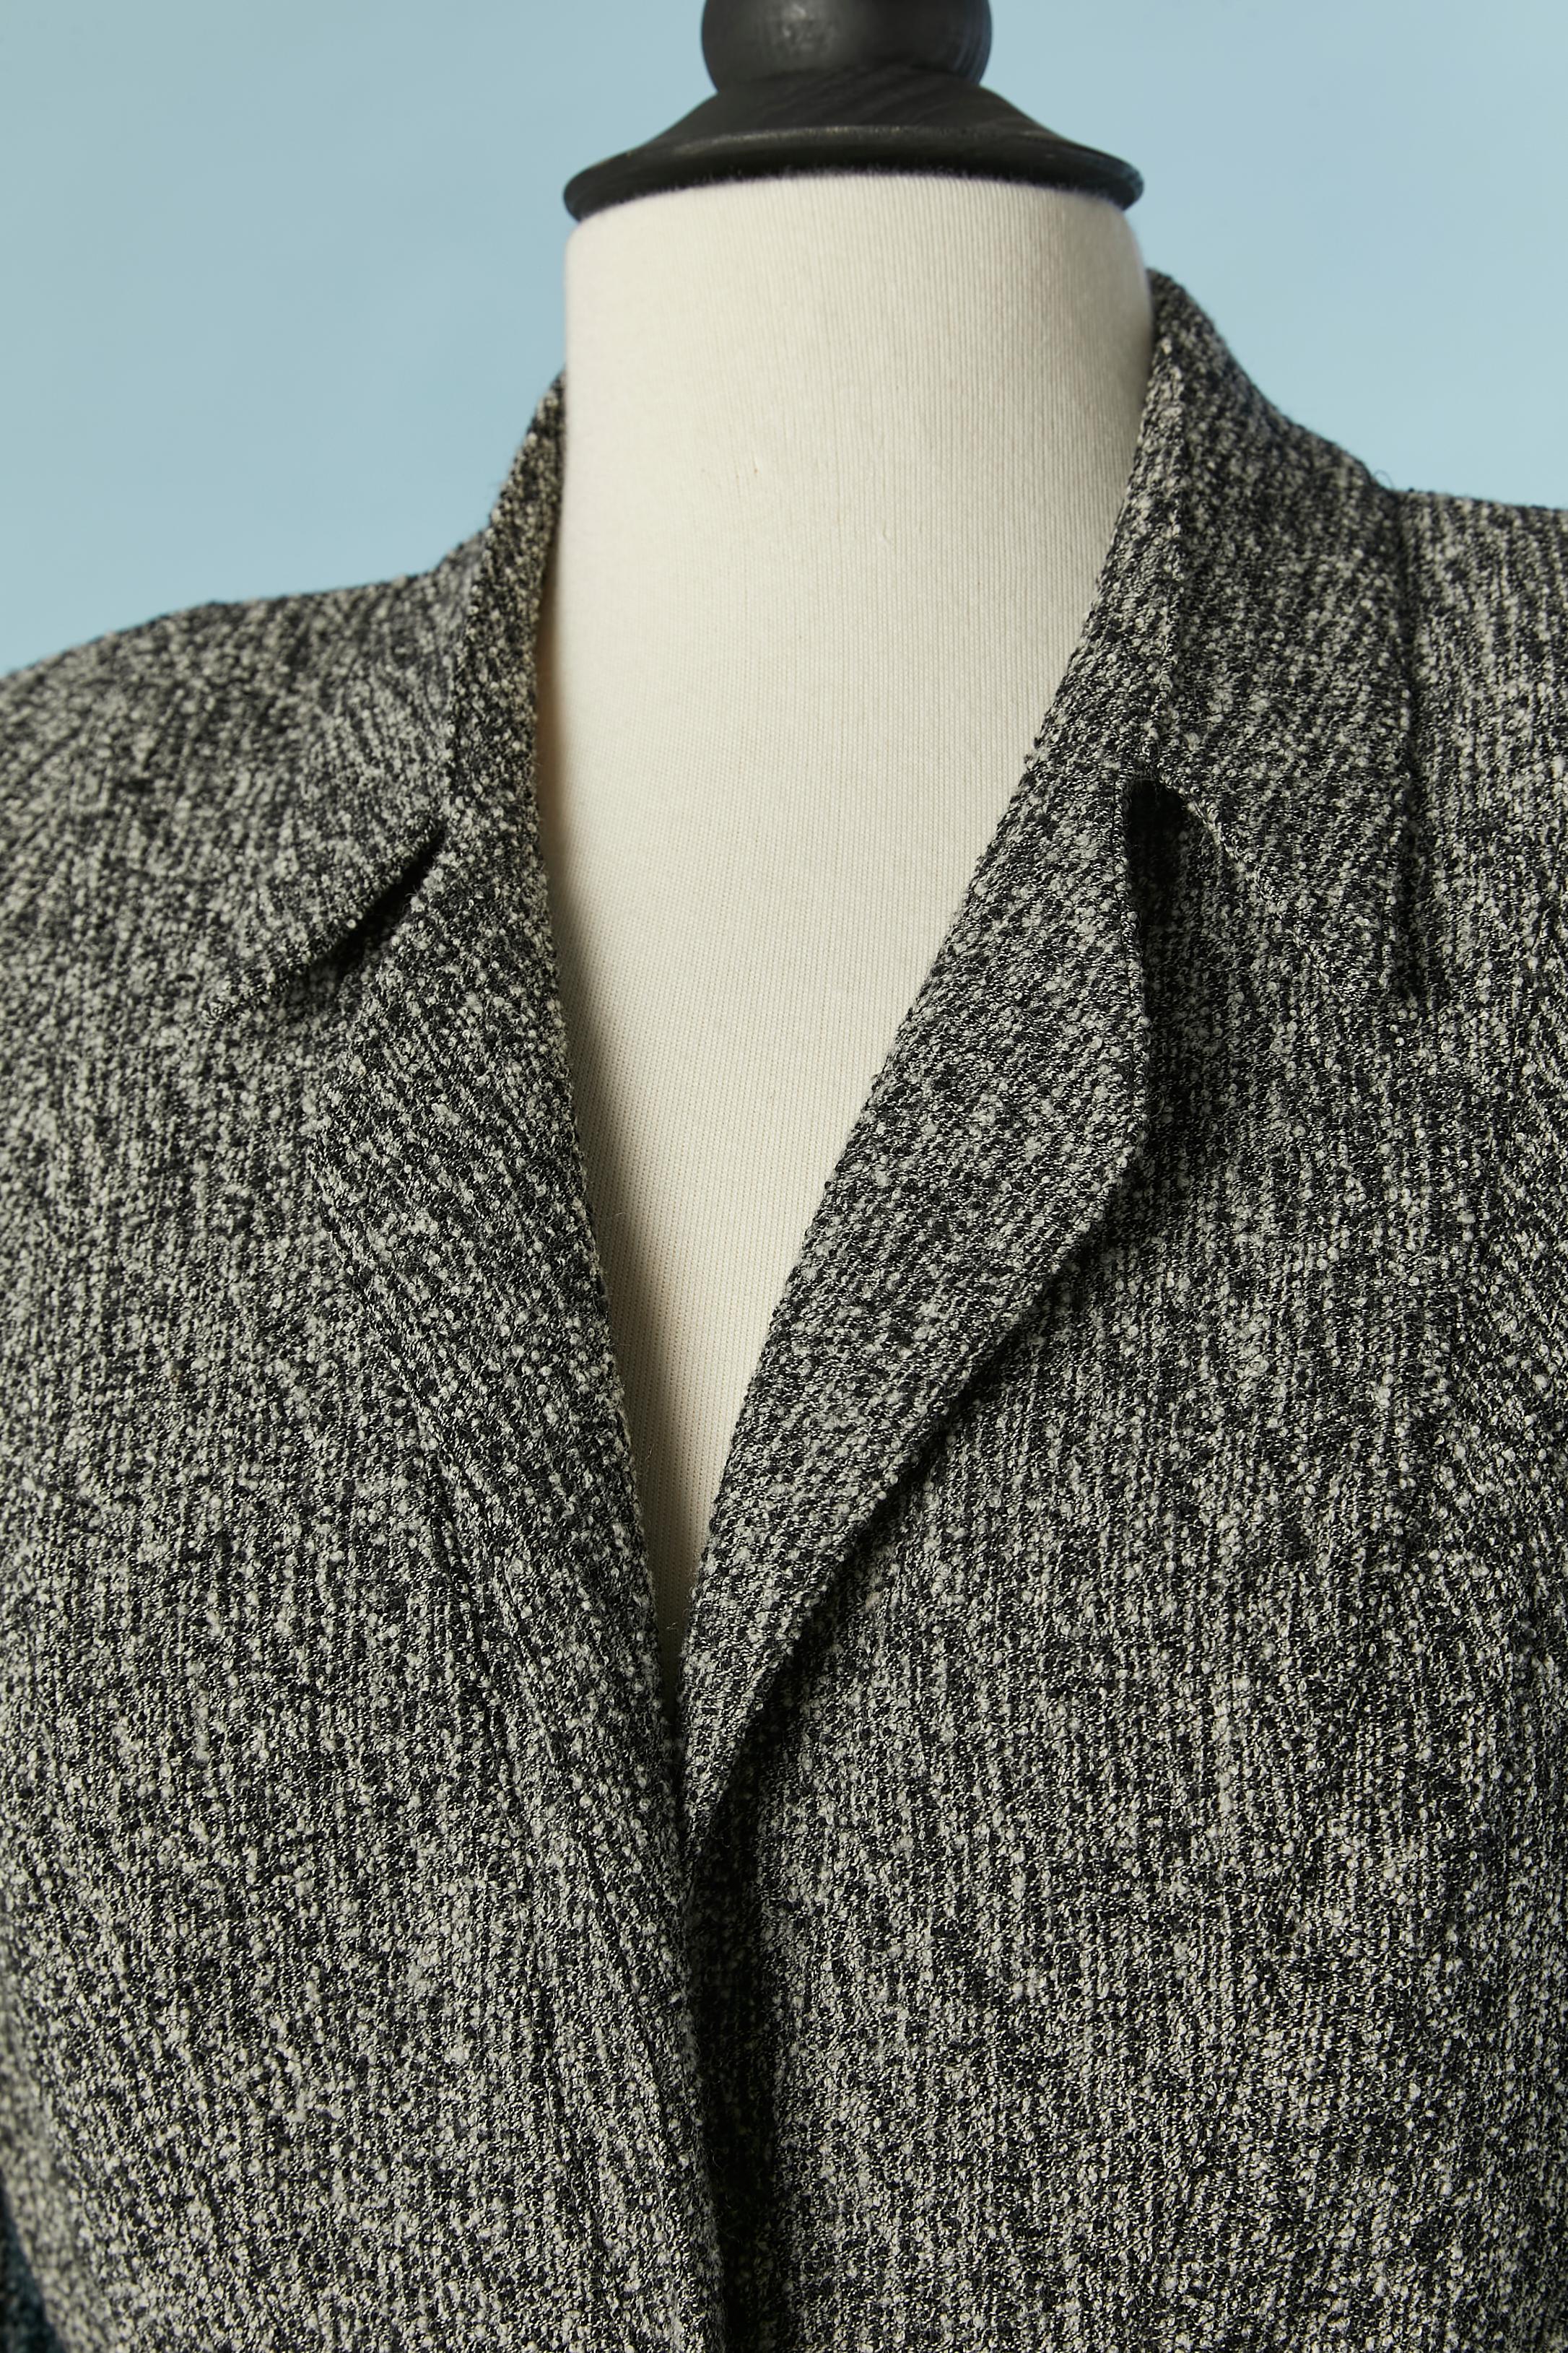 Combinaison en tweed noir et ivoire. Composition du tissu principal : 87% laine, 13% polyamide. Doublure en acétate ou en rayonne (pas d'étiquette indiquant la composition du tissu pour la doublure) 
Fermeture à bouton-pression au milieu du devant.